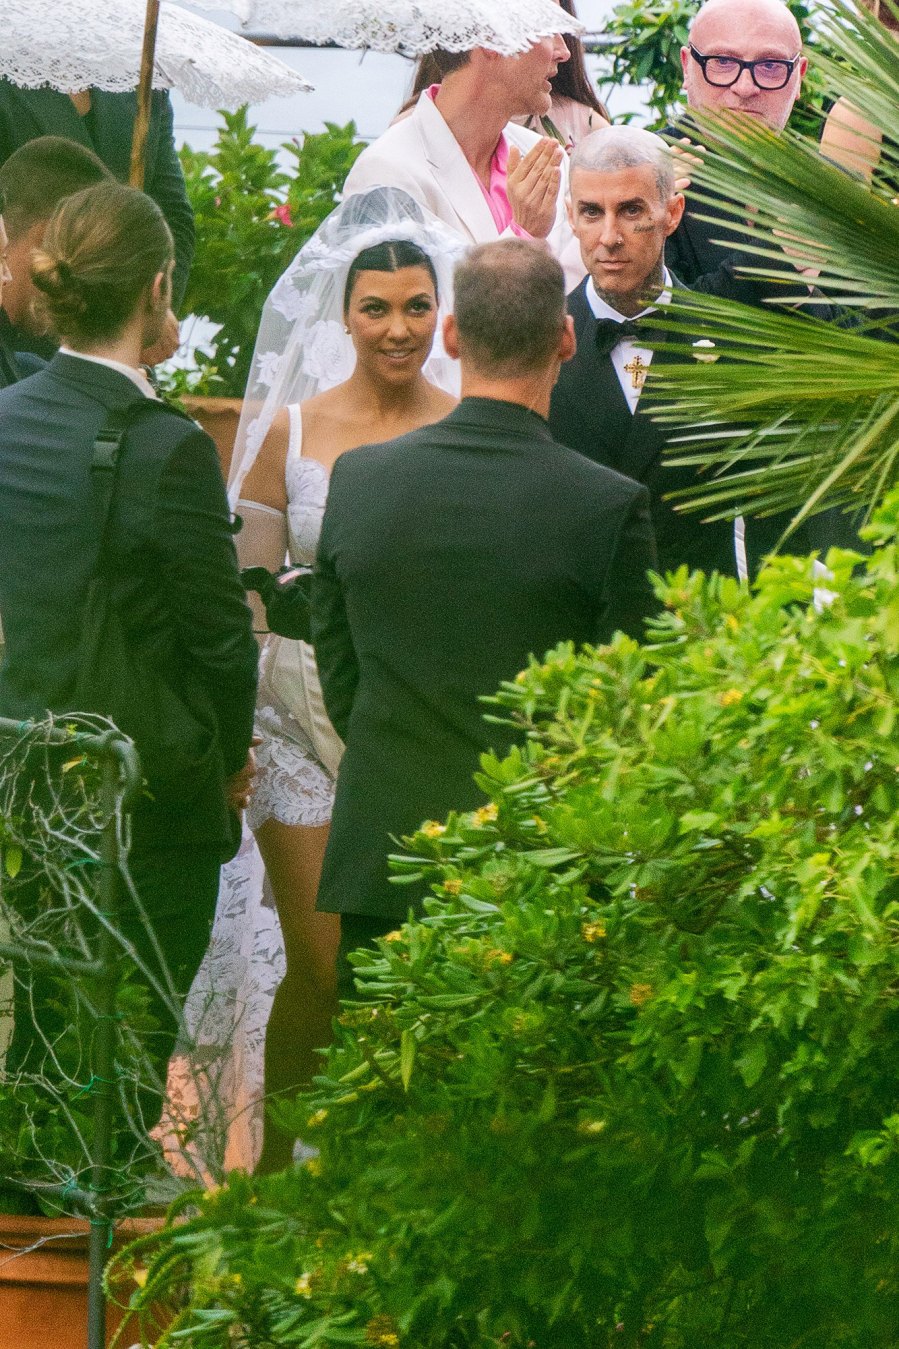 Biggest Kardashian-Jenner Family Moments of 2022- From Khloe's Baby to Kourtney’s Weddings - 107 Kourtney Kardashian and Travis Barker Wedding in Portofino, Italy - 22 May 2022